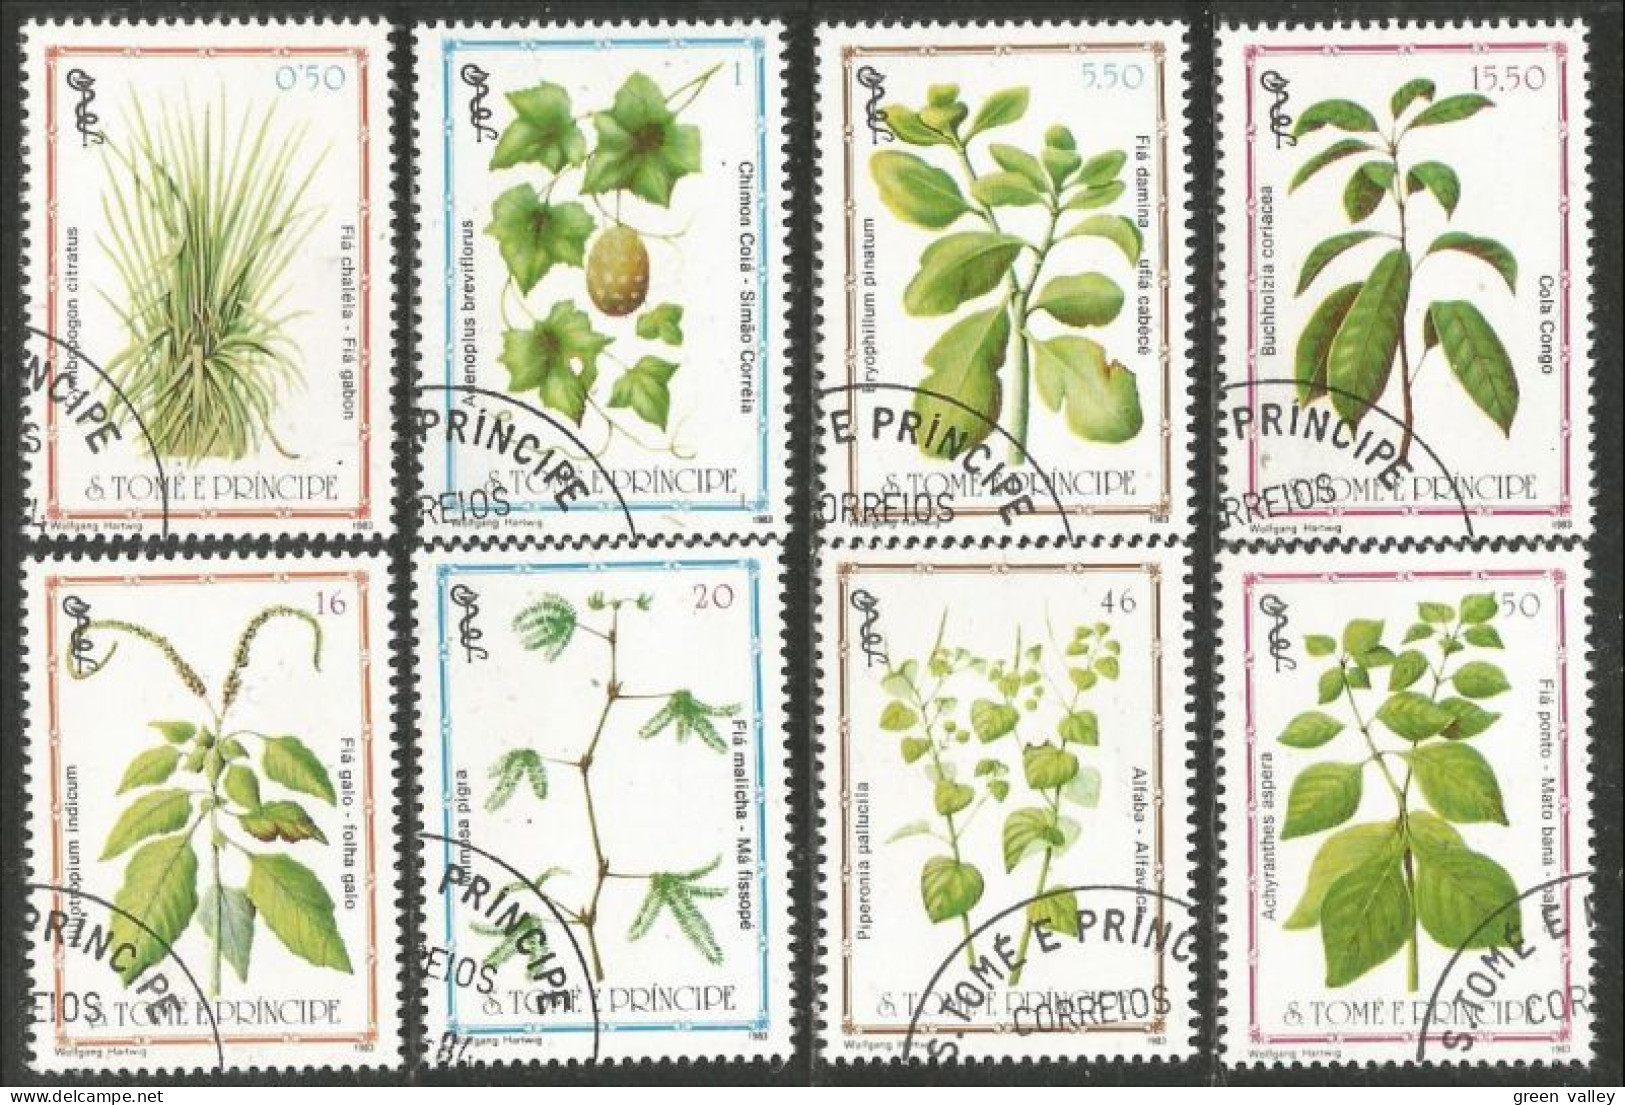 788 Sao Tome Principe Plante Plant Heilpflanze Pflanze Medicinal Médicinale (SAO-23c) - Plantas Medicinales